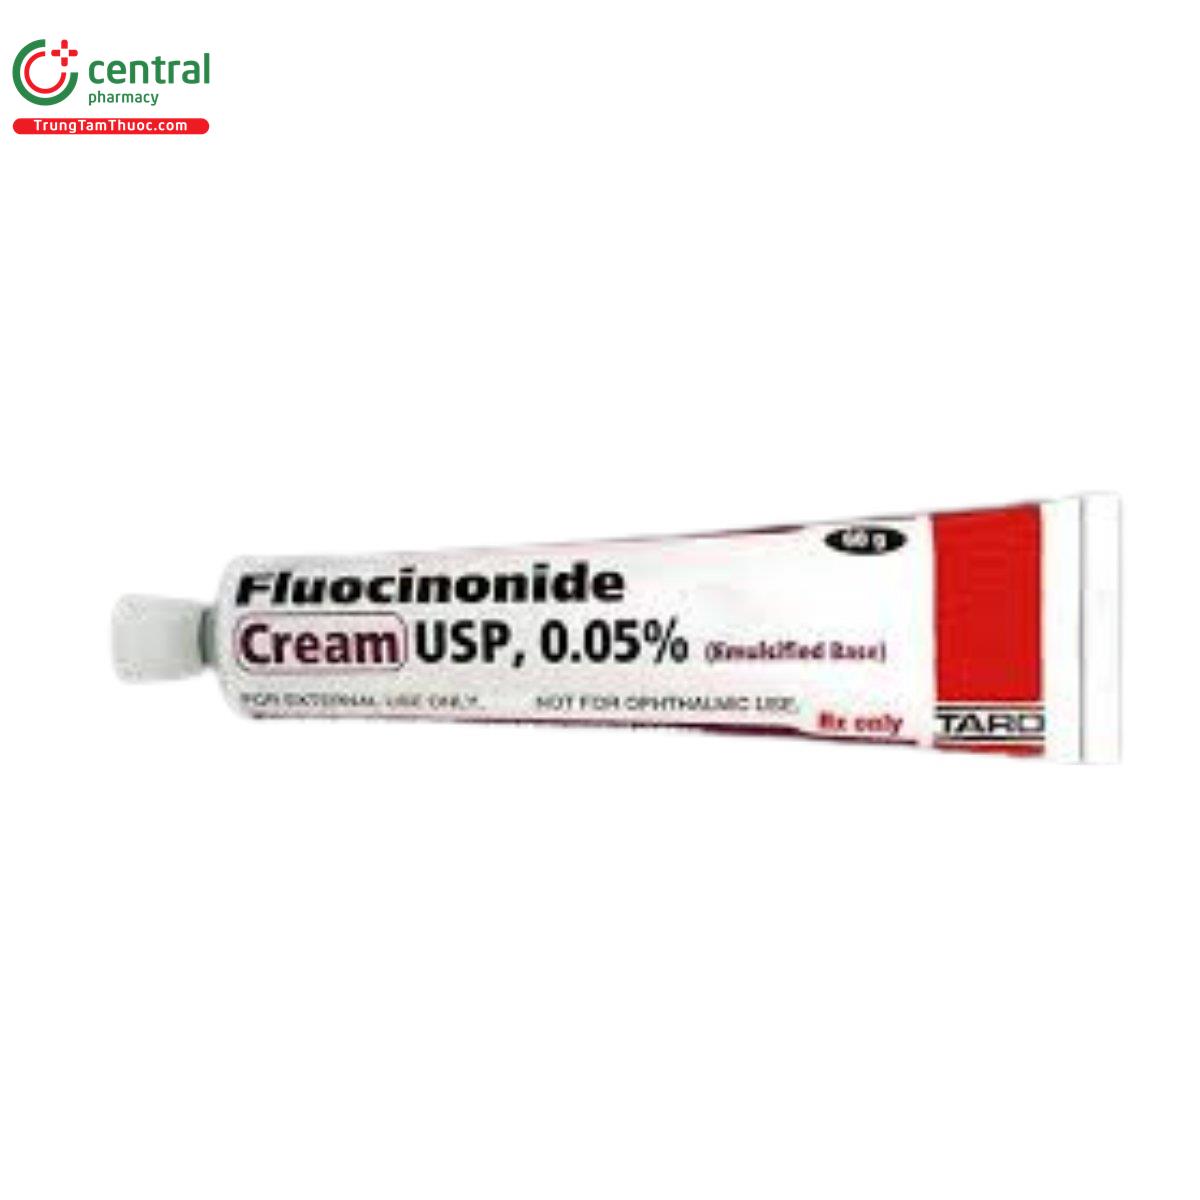 fluocinonide cream usp 005 7 G2168